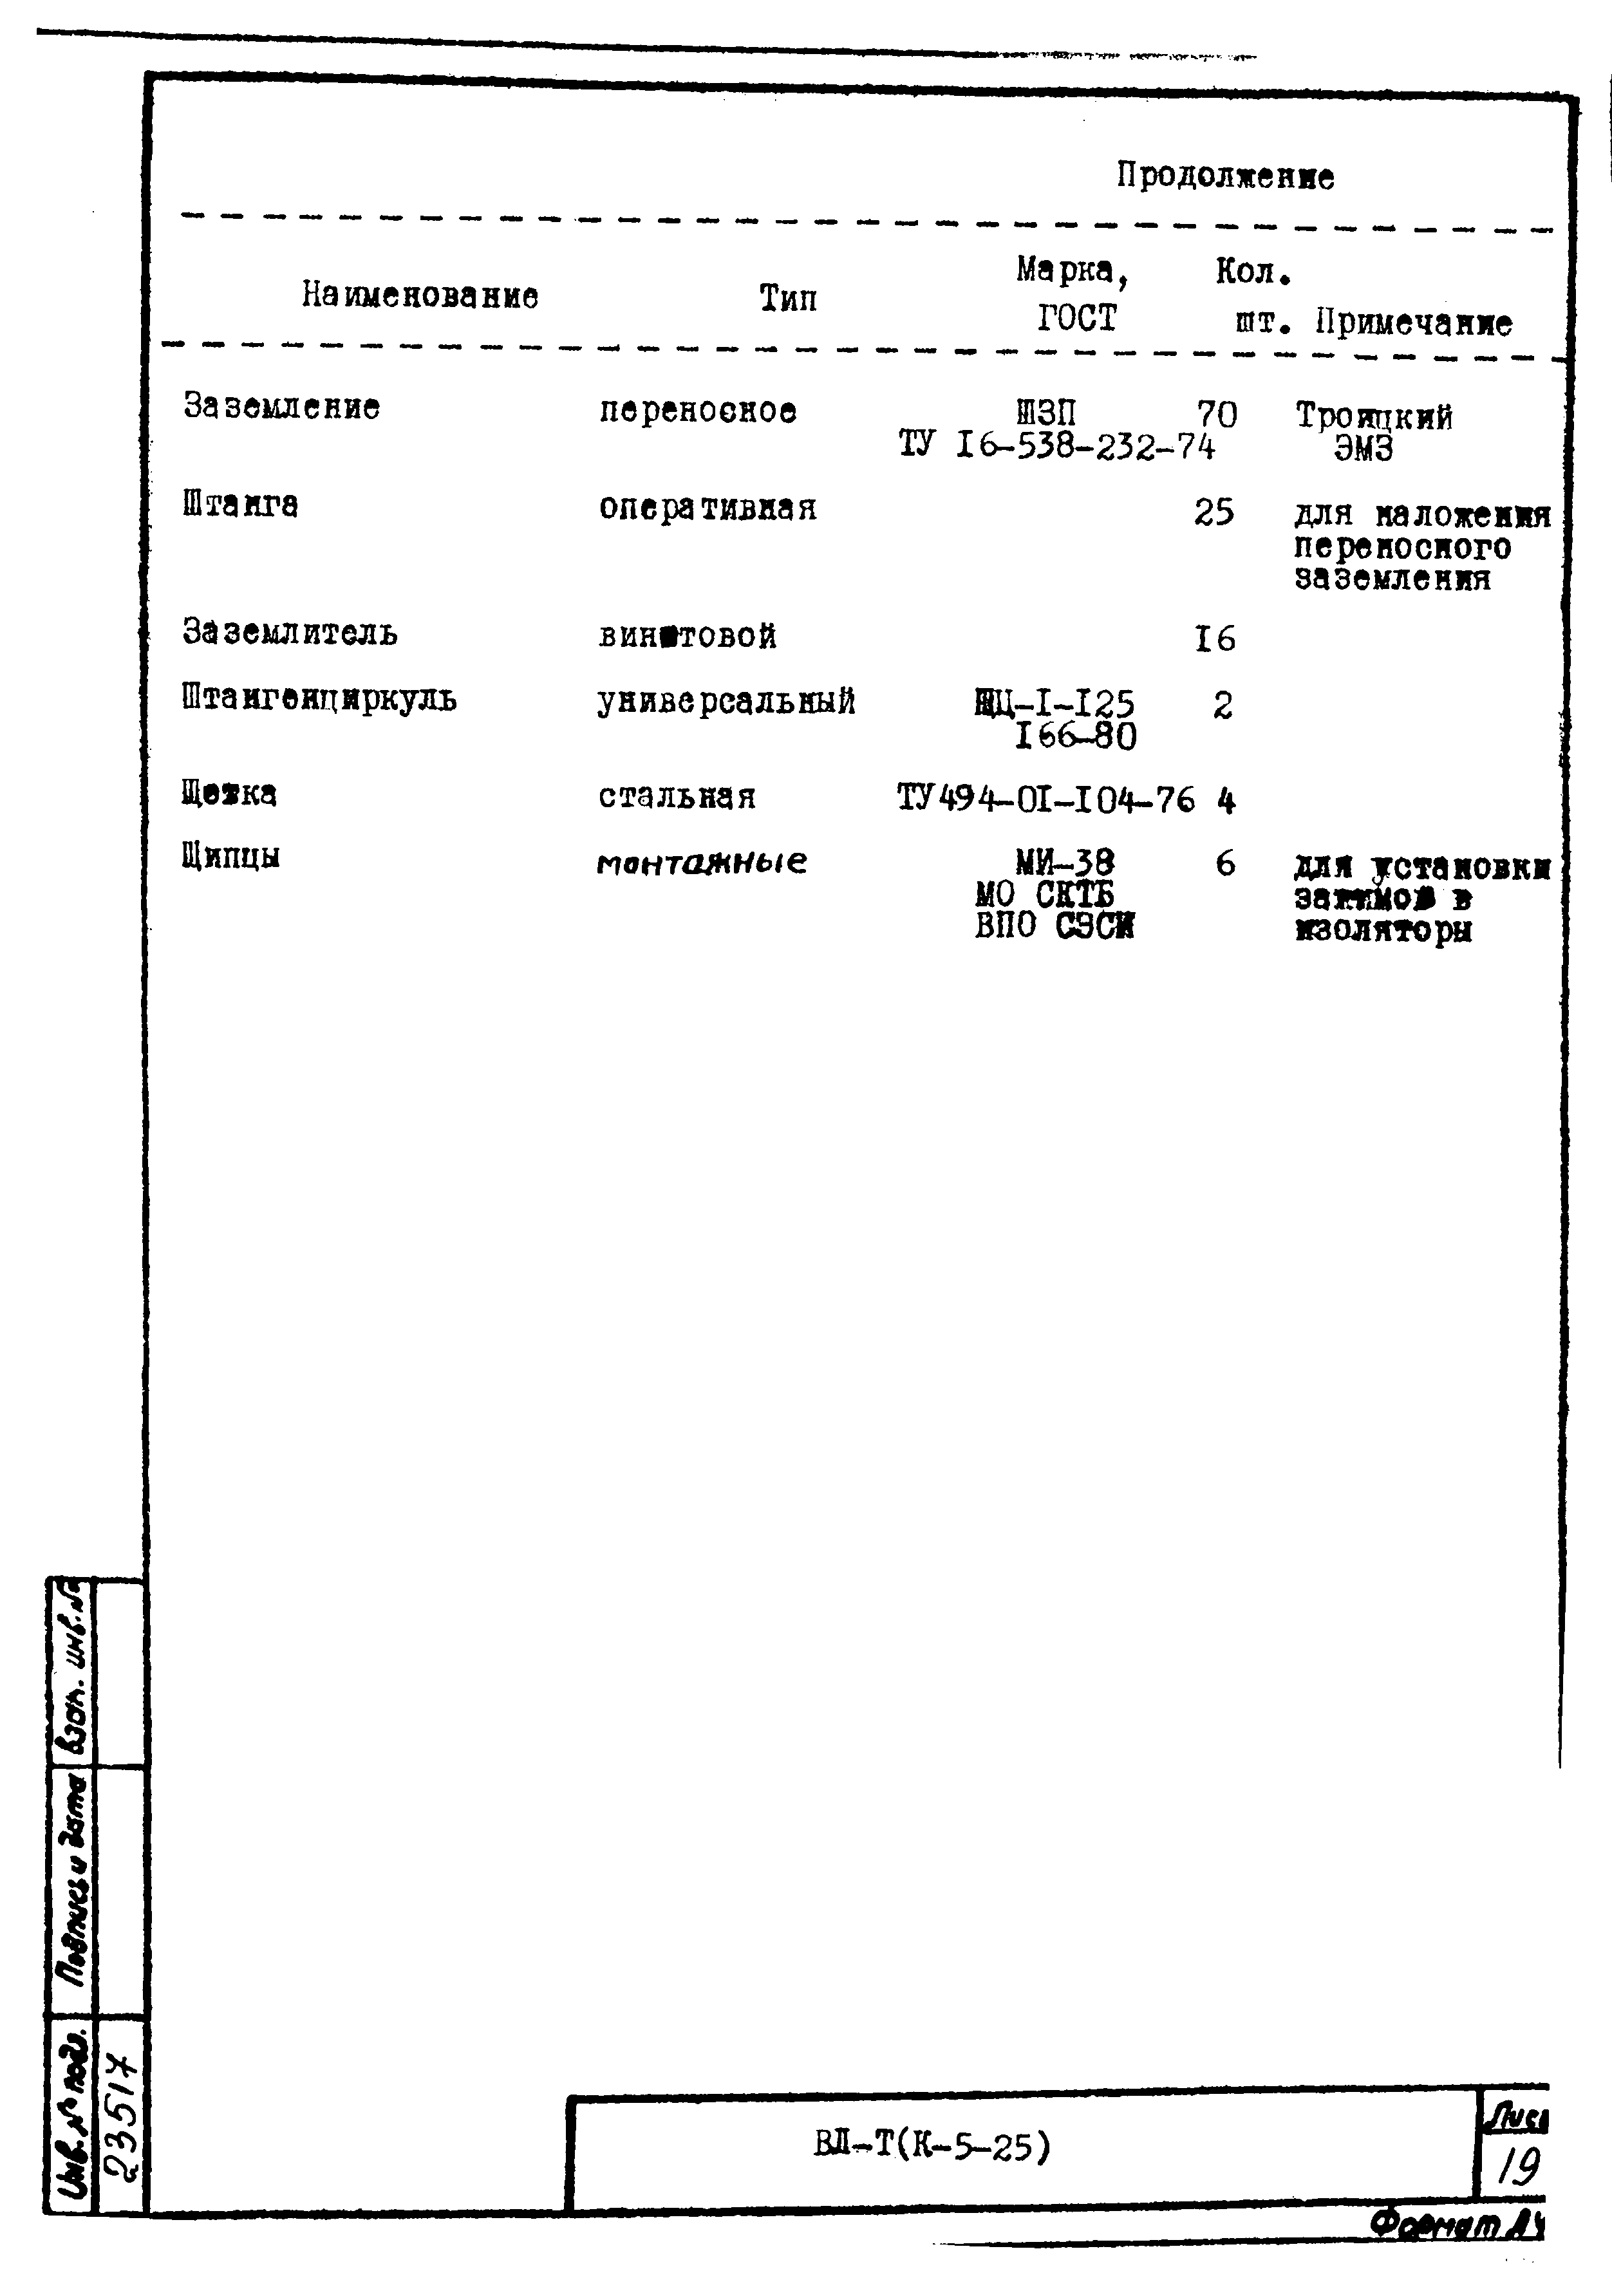 Технологическая карта К-5-25-14